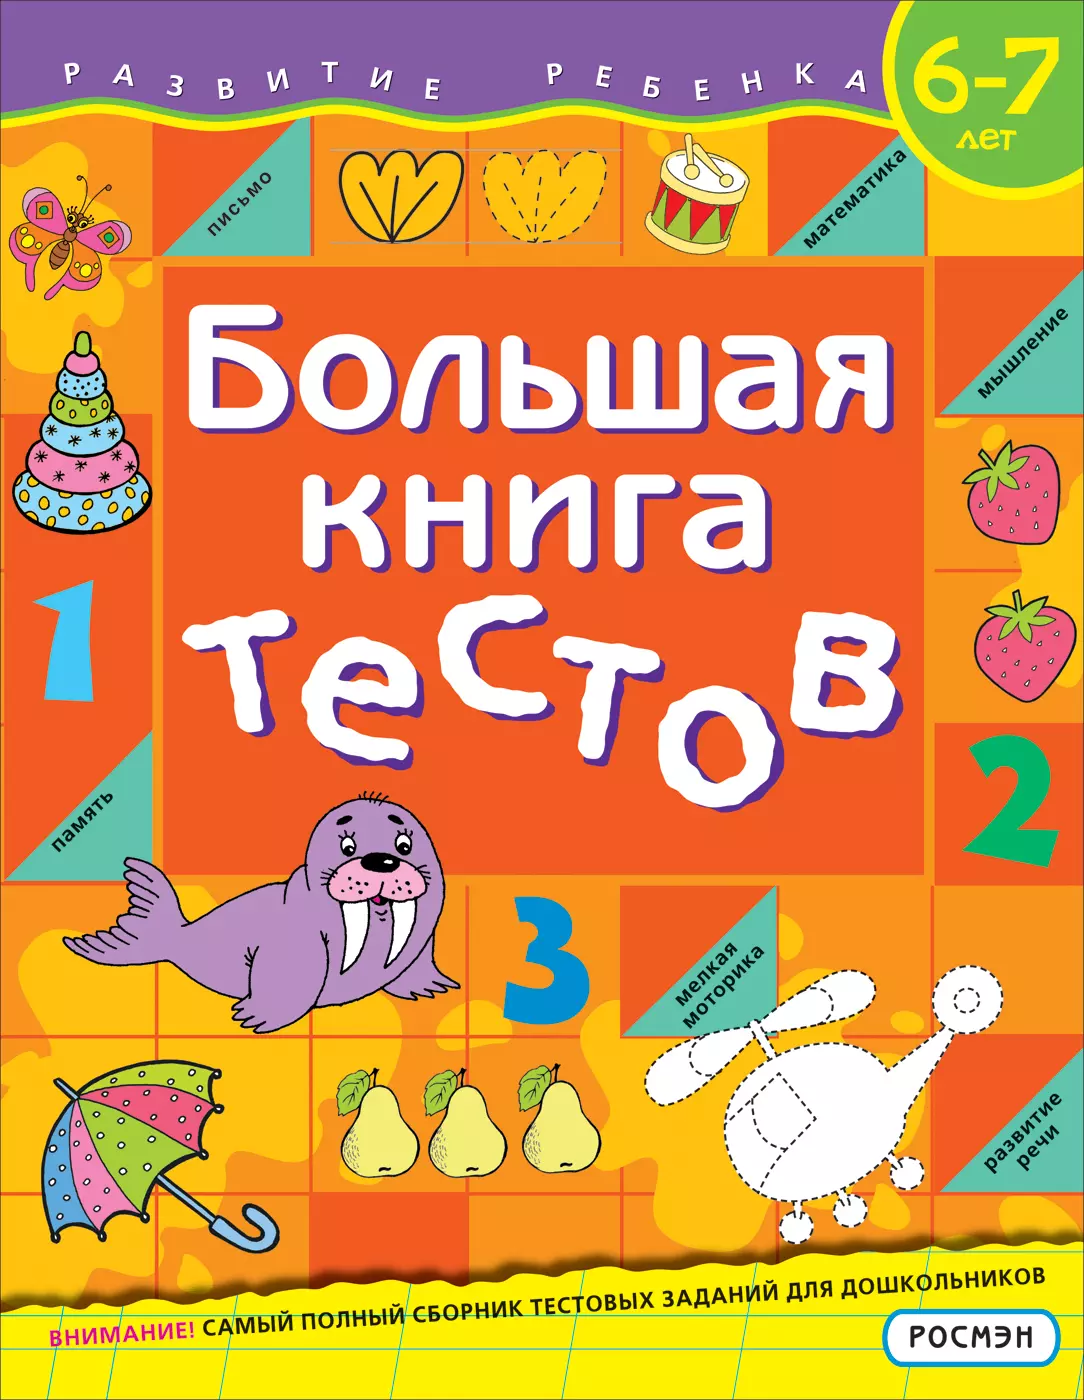 Большая Книга тестов. 6-7 лет. изд. Росмэн